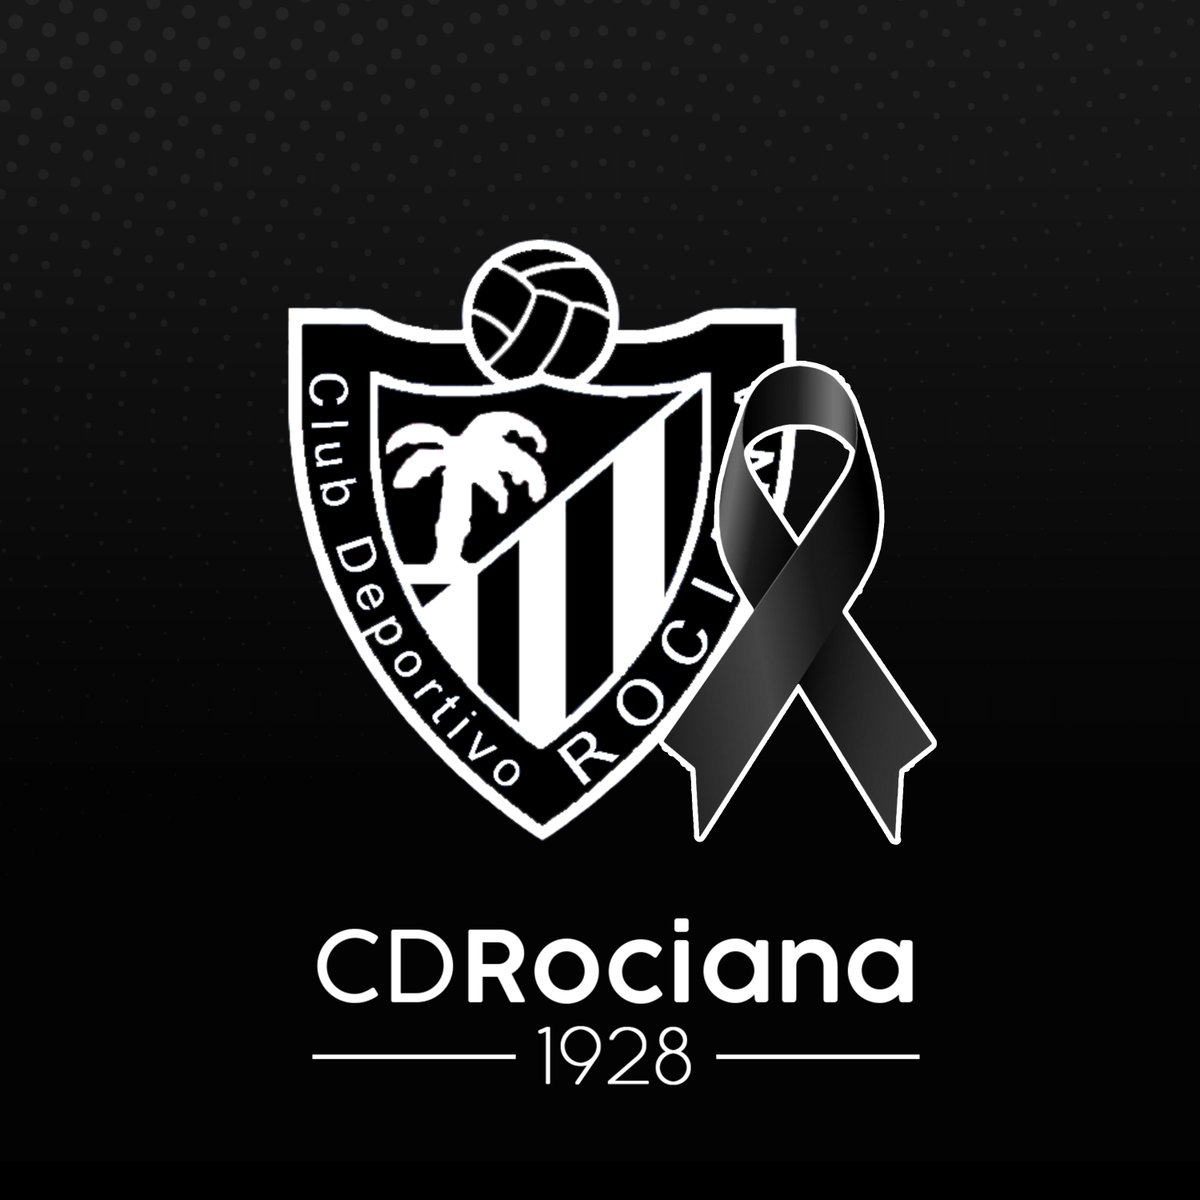 Desde el @CDRociana, tenemos que lamentar profundamente el fallecimiento de la madre de nuestro entrenador de porteros, Juan Antonio Domínguez Toro, 'Largo'. Tanto a nuestro amigo como a toda su familia y allegados de su madre, le mandamos nuestro más sentido pésame. DEP.